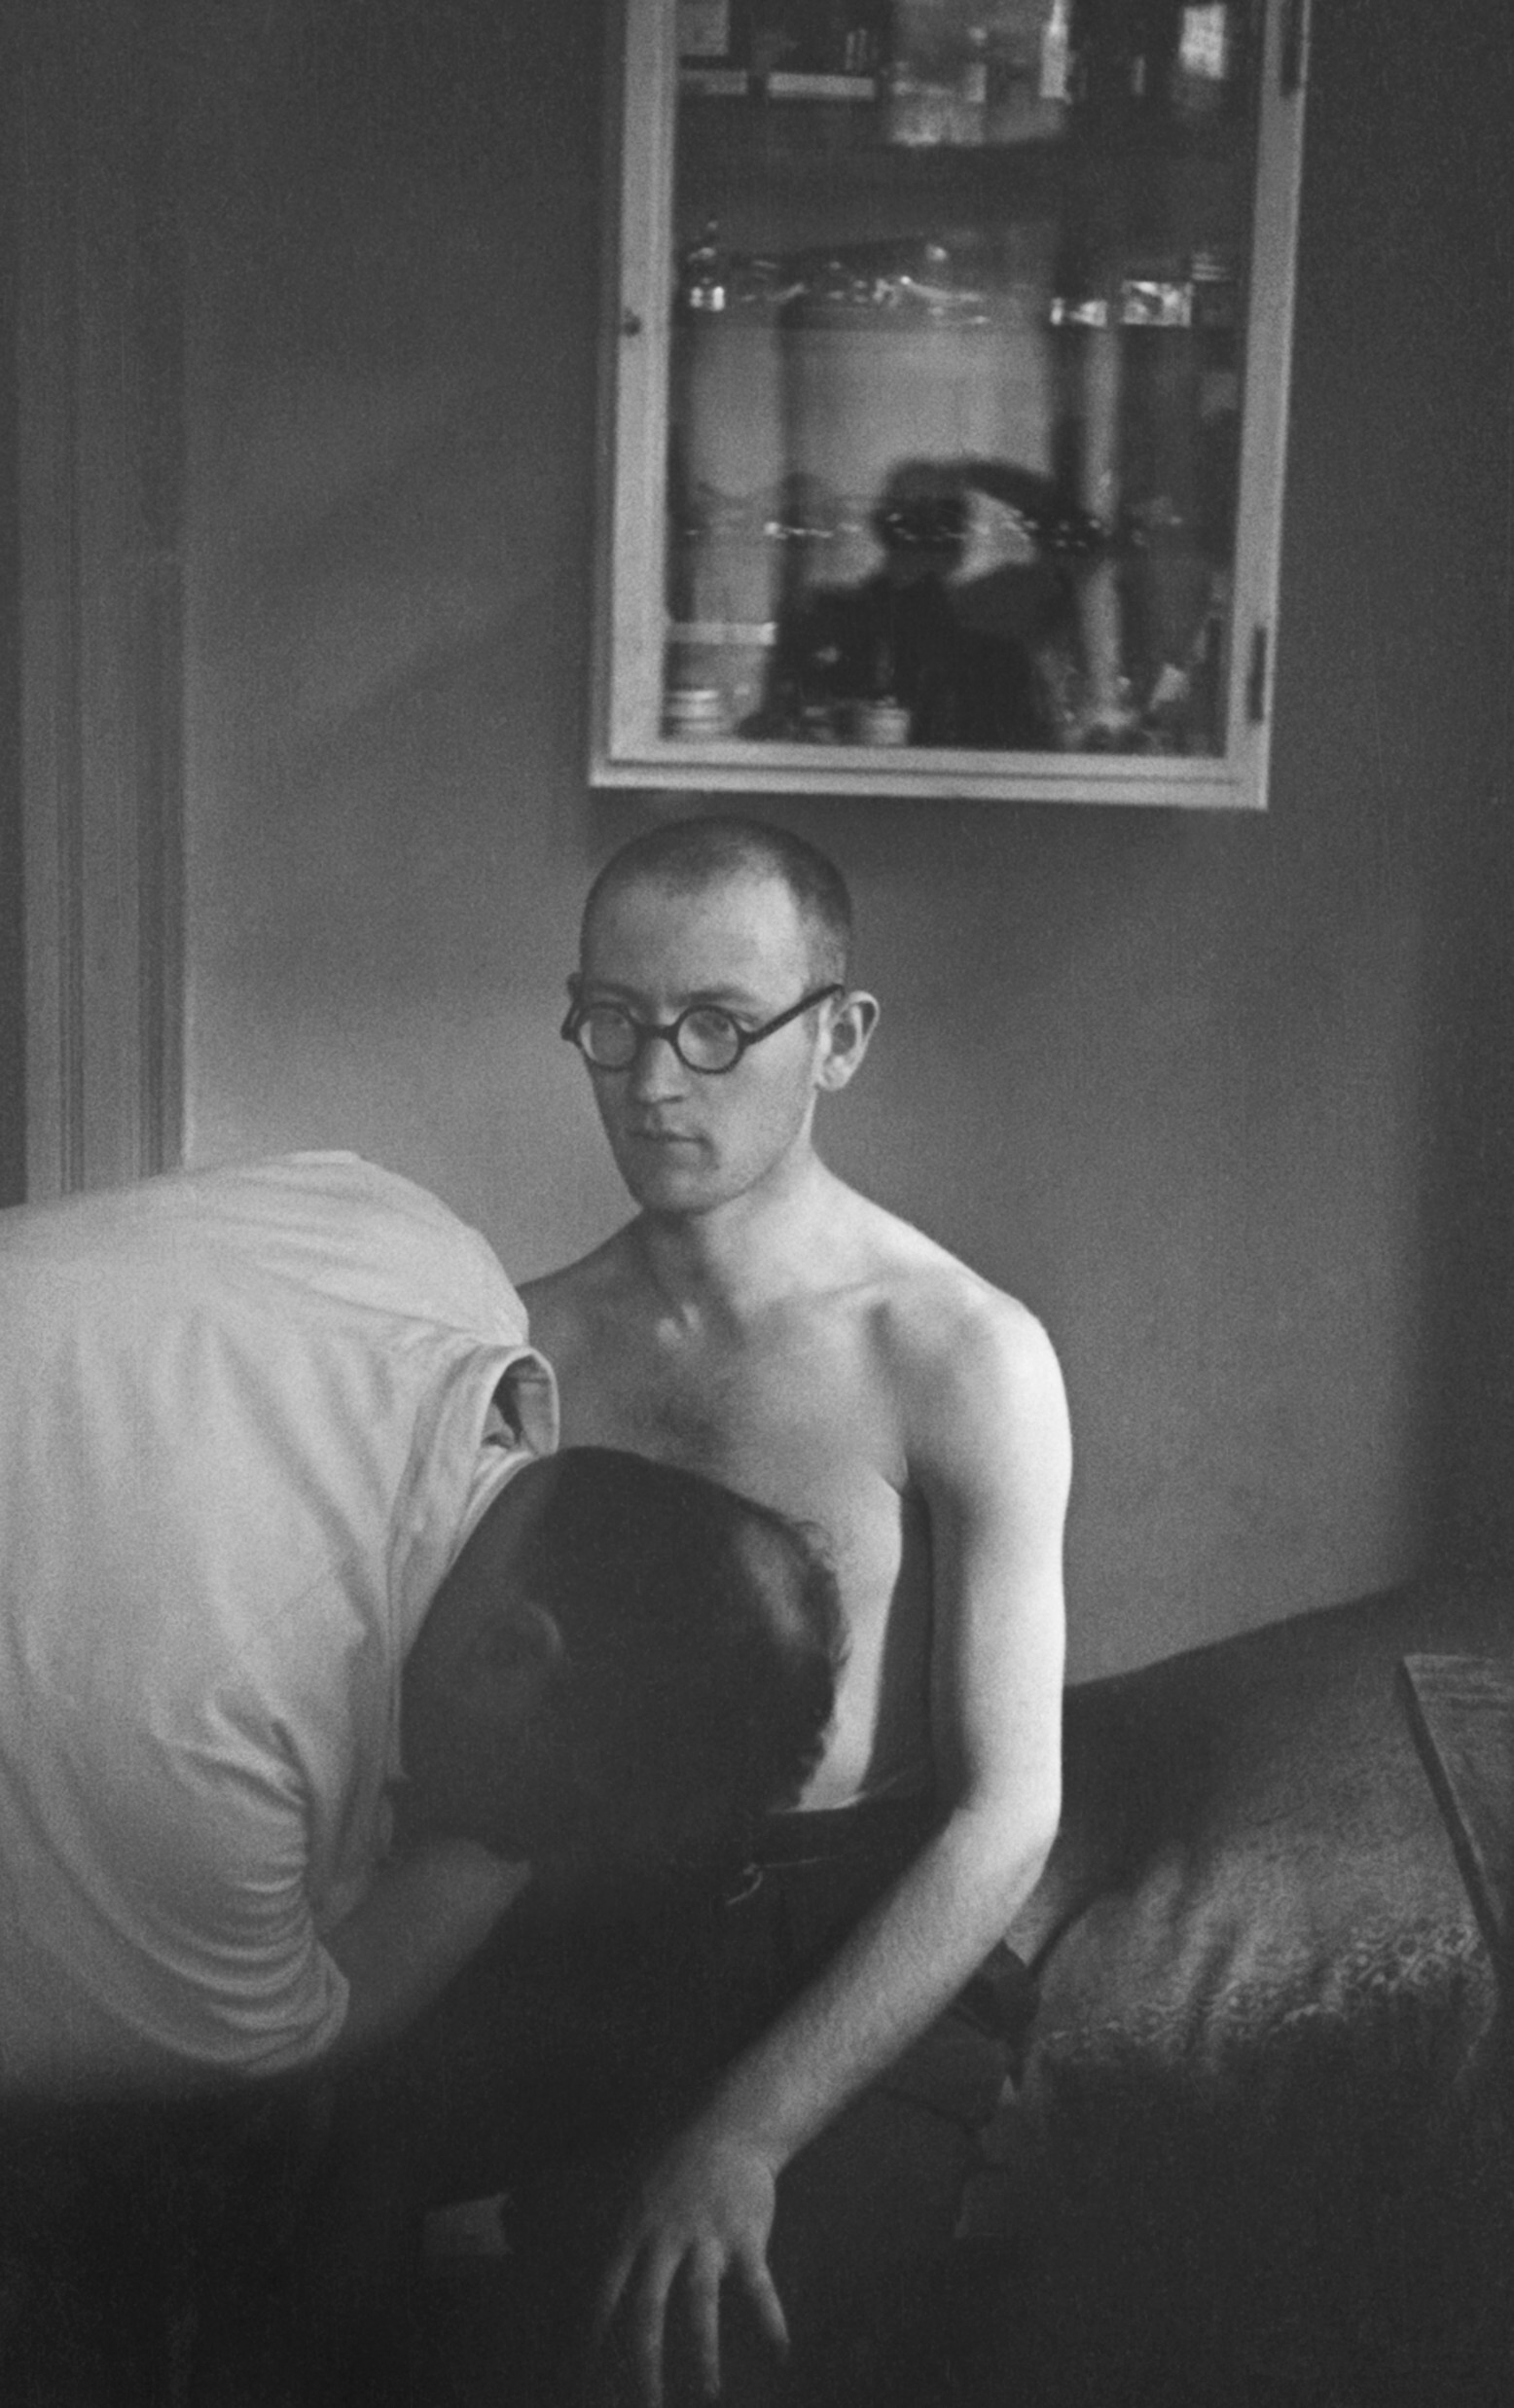 Врач осматривает грудную клетку пациента в еврейской поликлинике в Берлине, середины-конца 1930-х гг. Фотограф Роман Вишняк